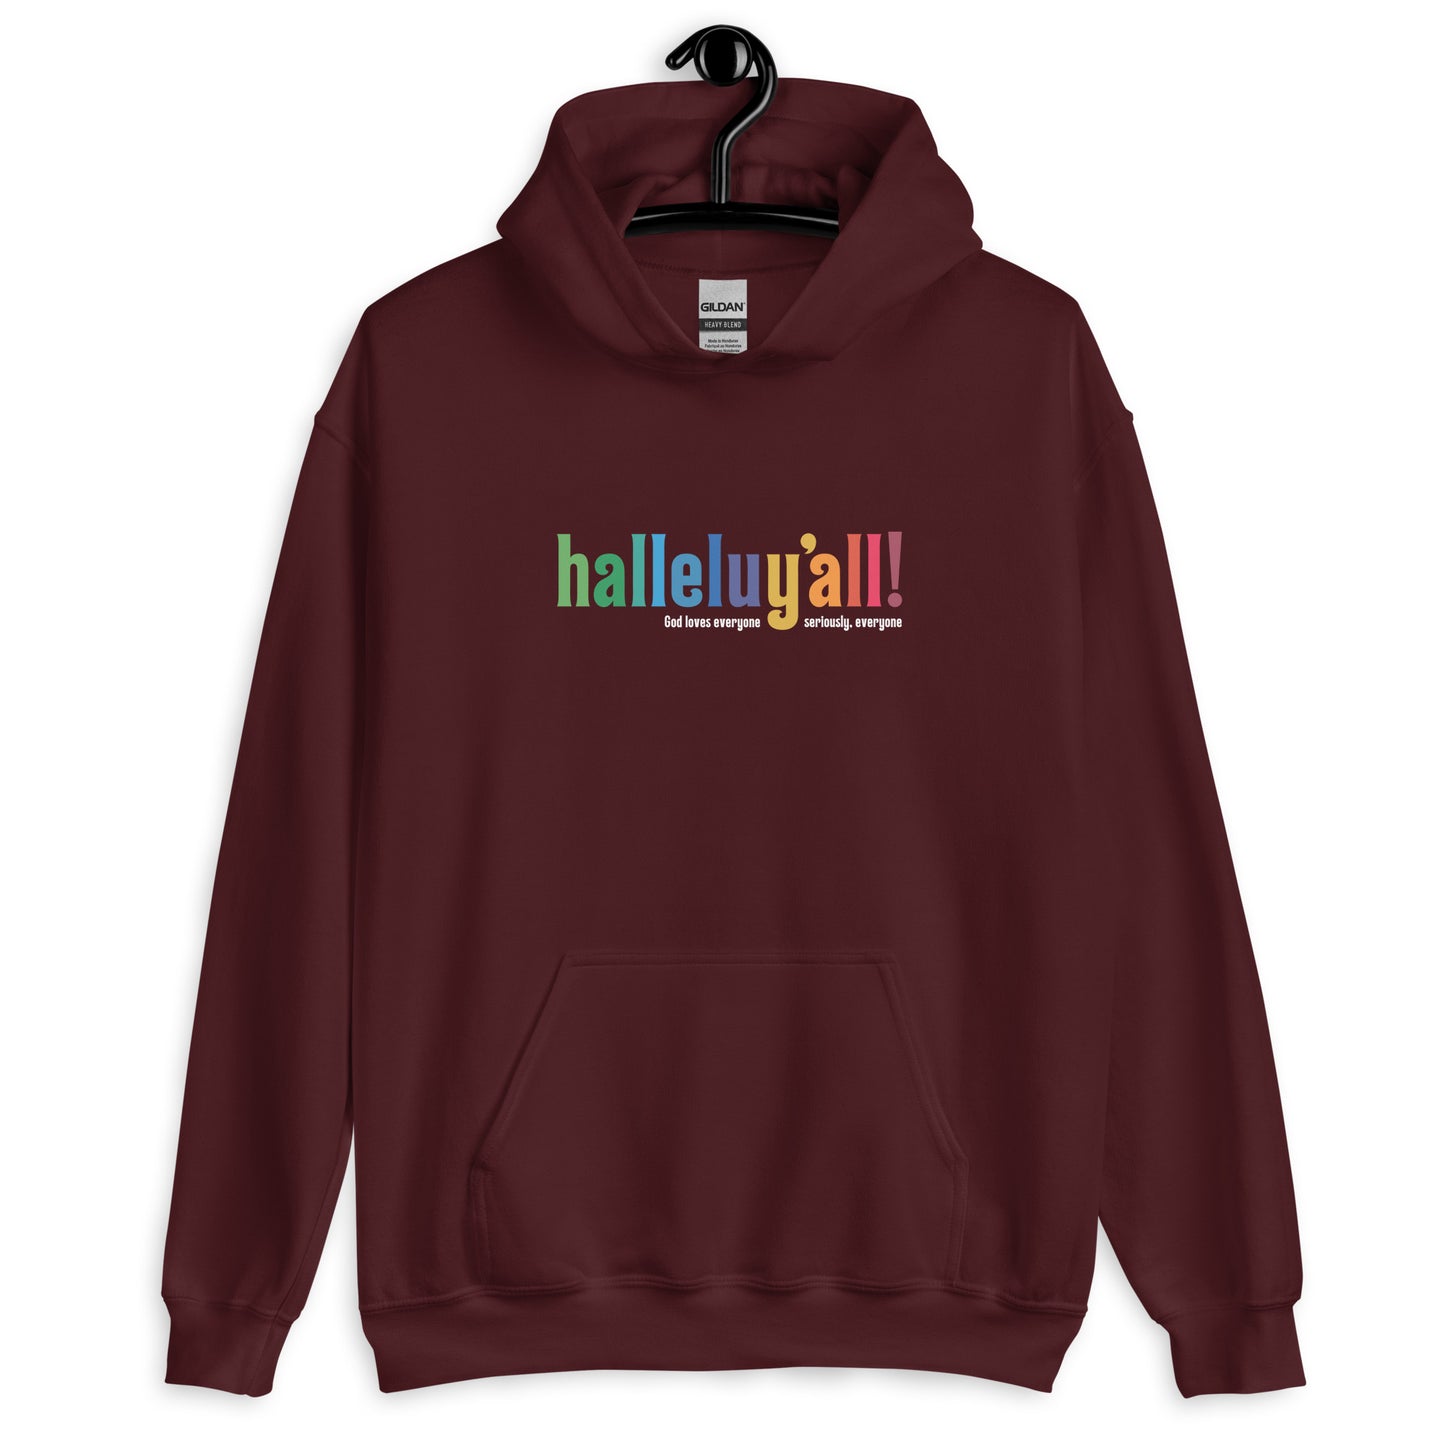 Halleluy’all - Hooded Sweatshirt